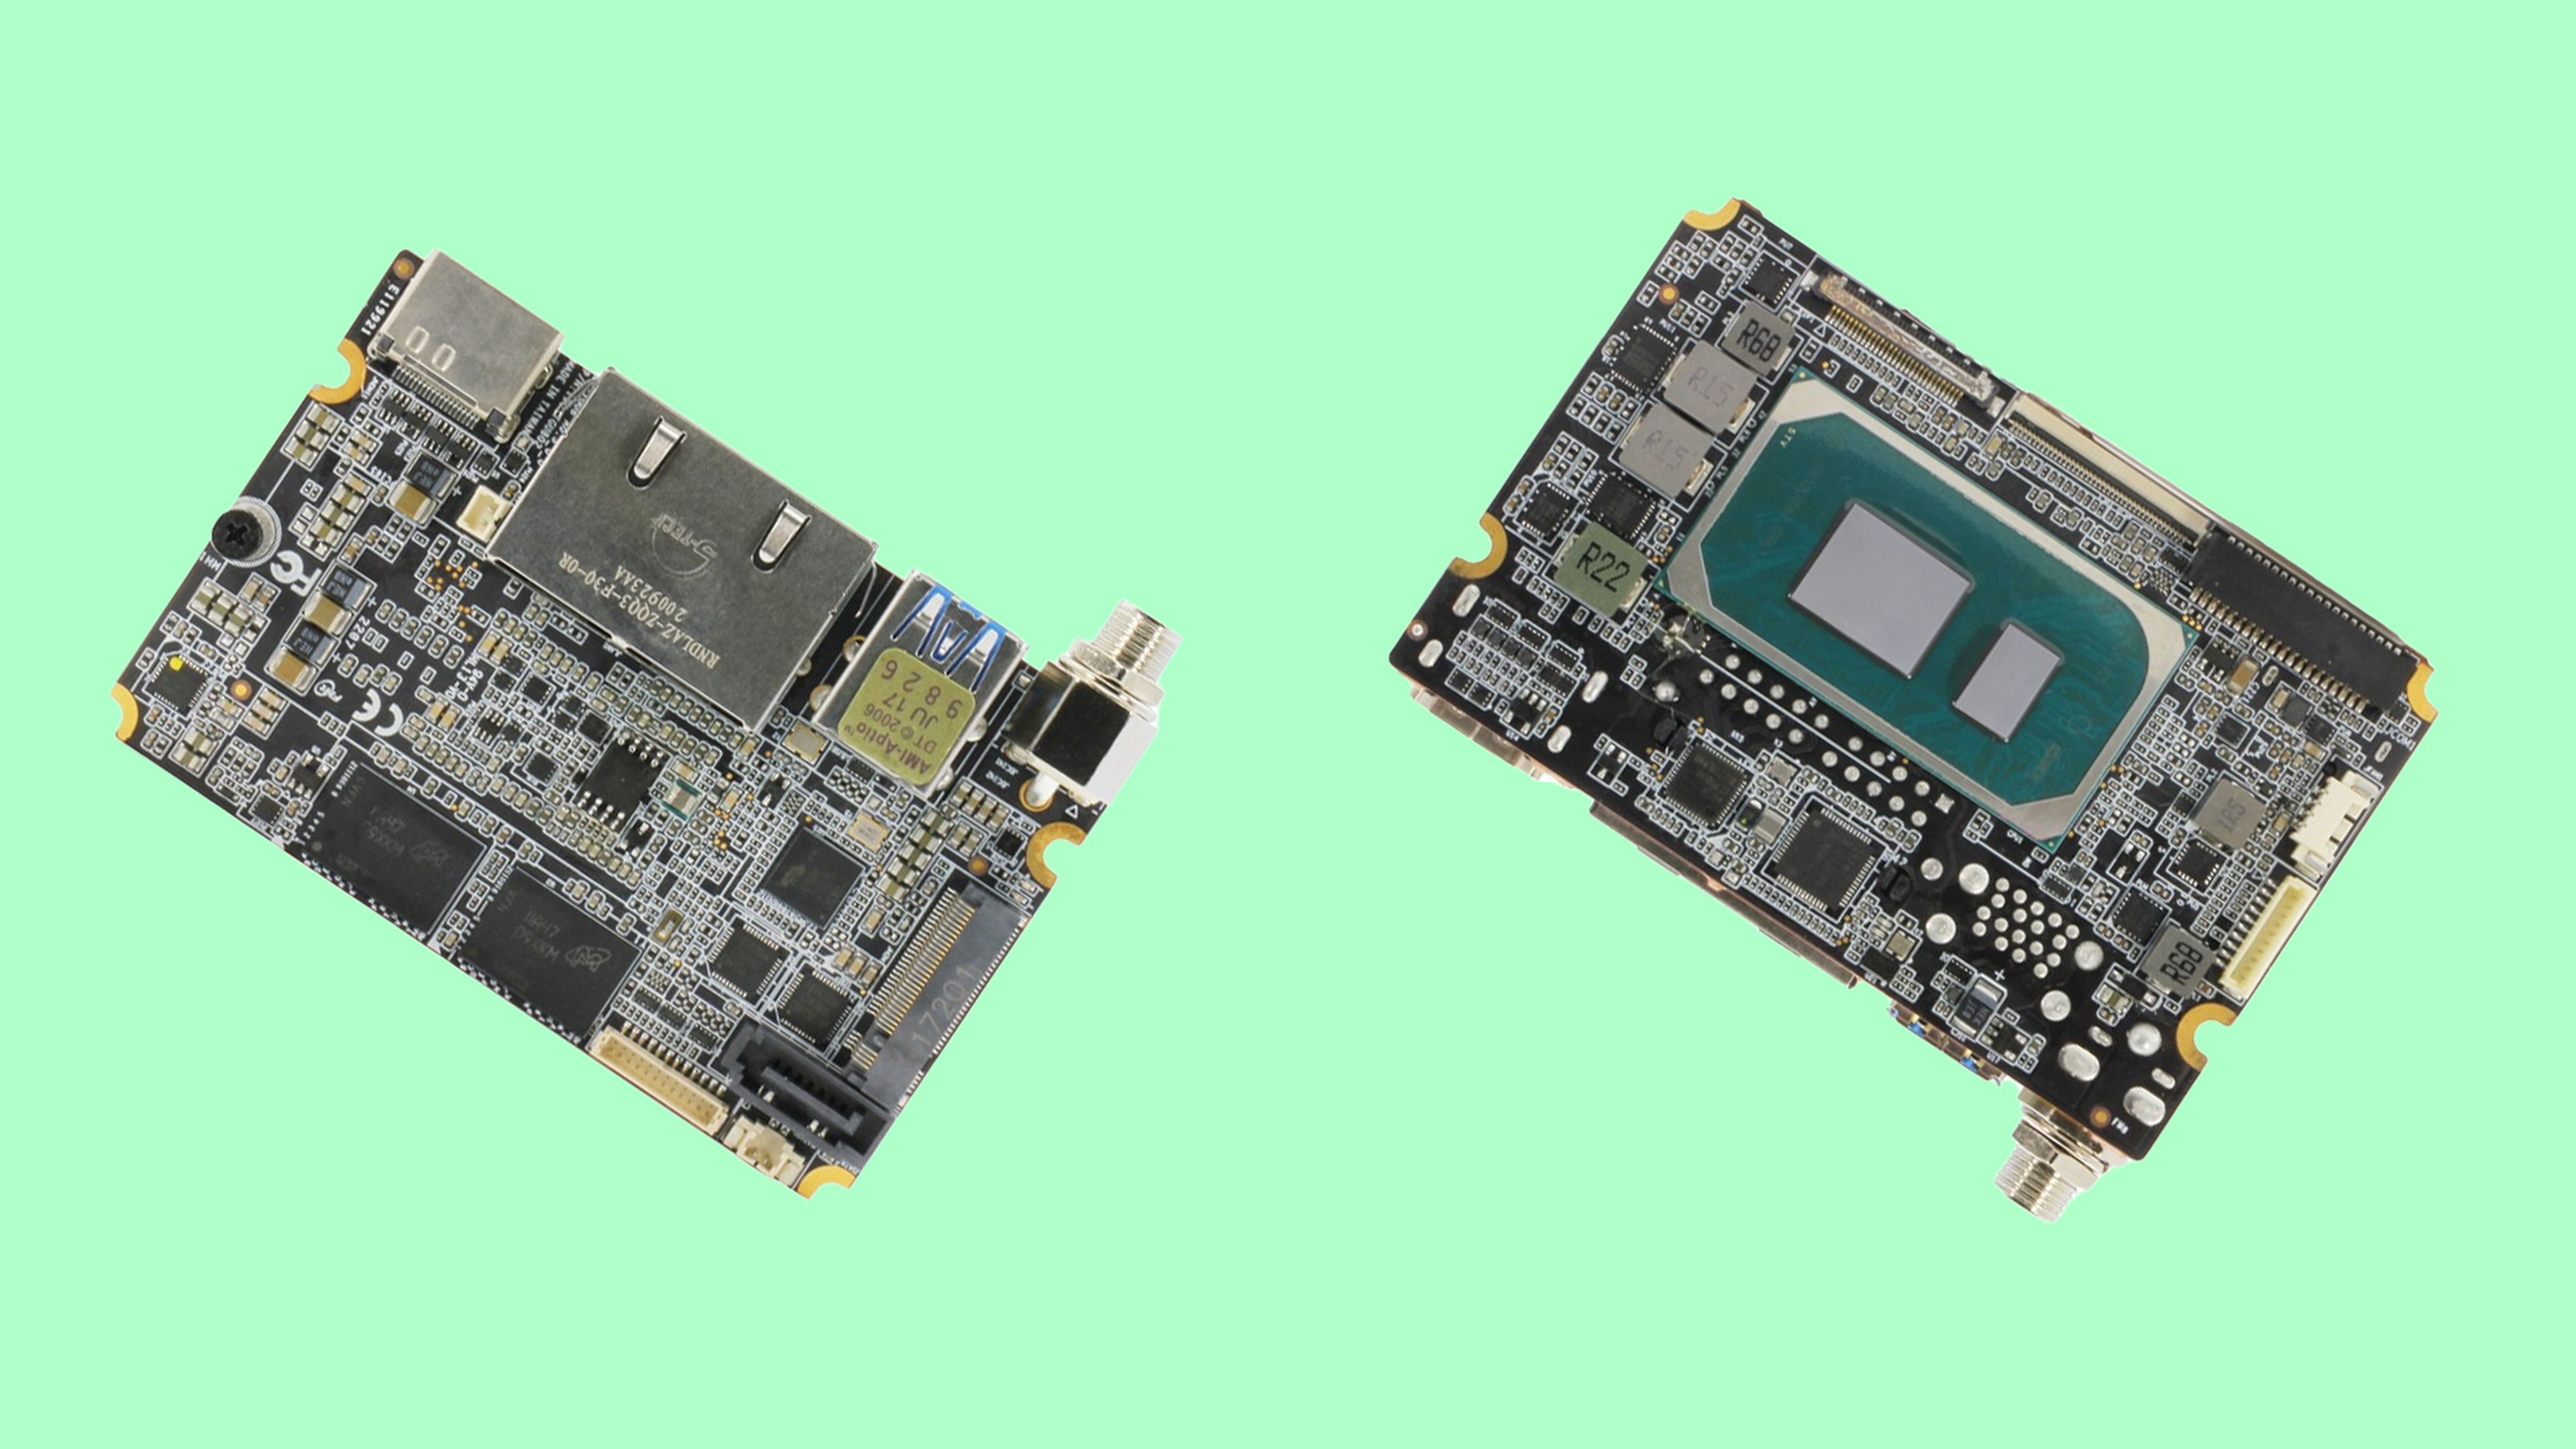 La Raspberry en esteorides: Core i7 11th gen en una placa tamaño tarjeta de crédito